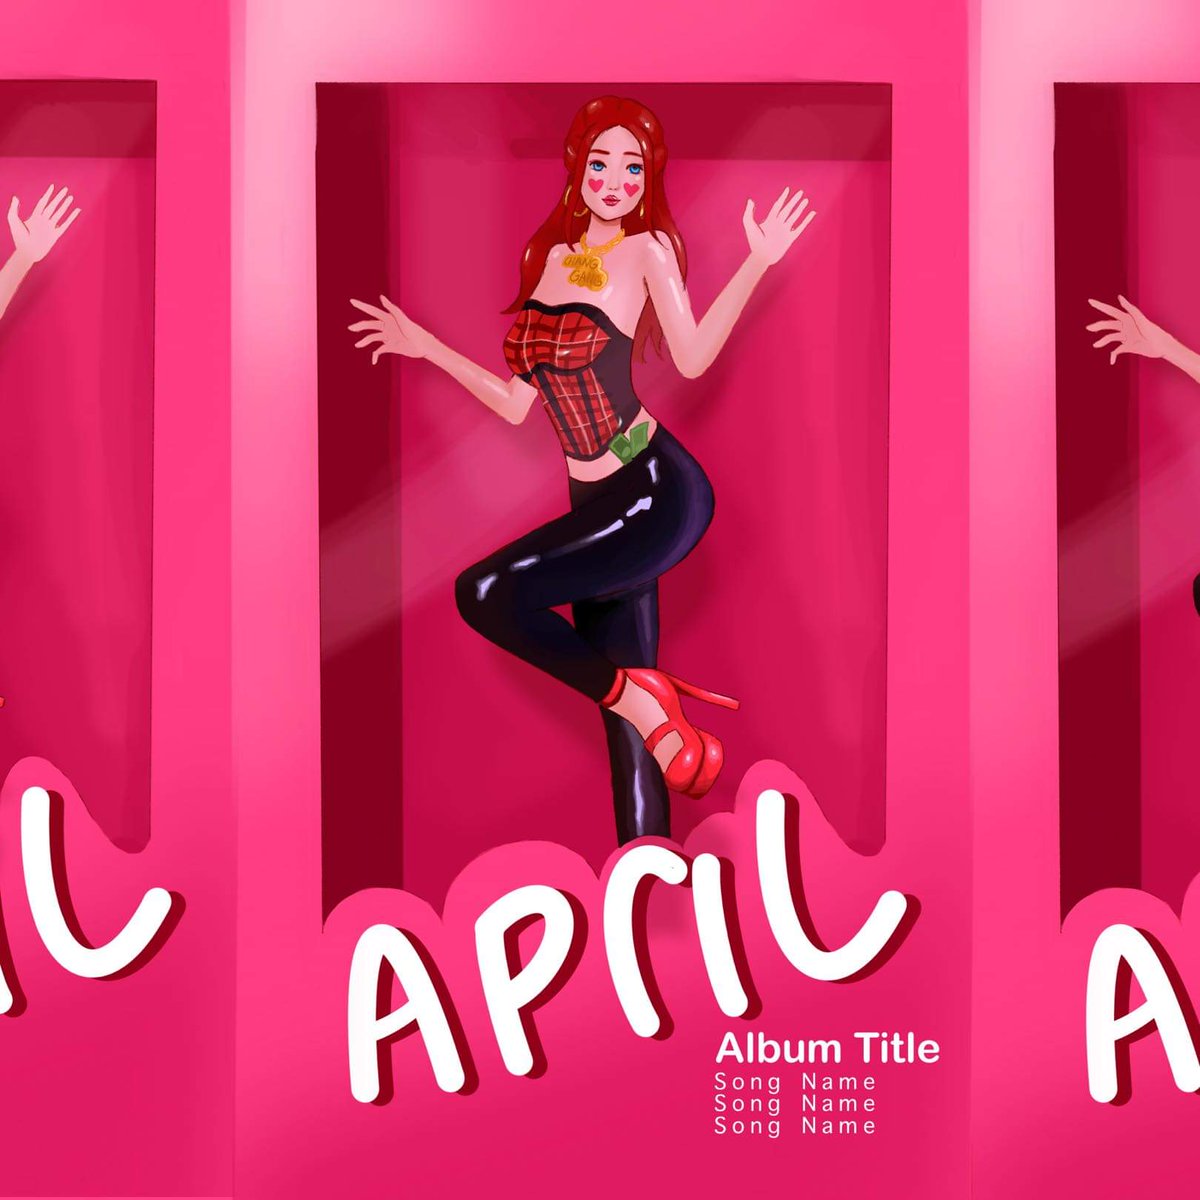 April Fooze fanart ❤
#fanart #NoPixel #fuslie #aprilfooze